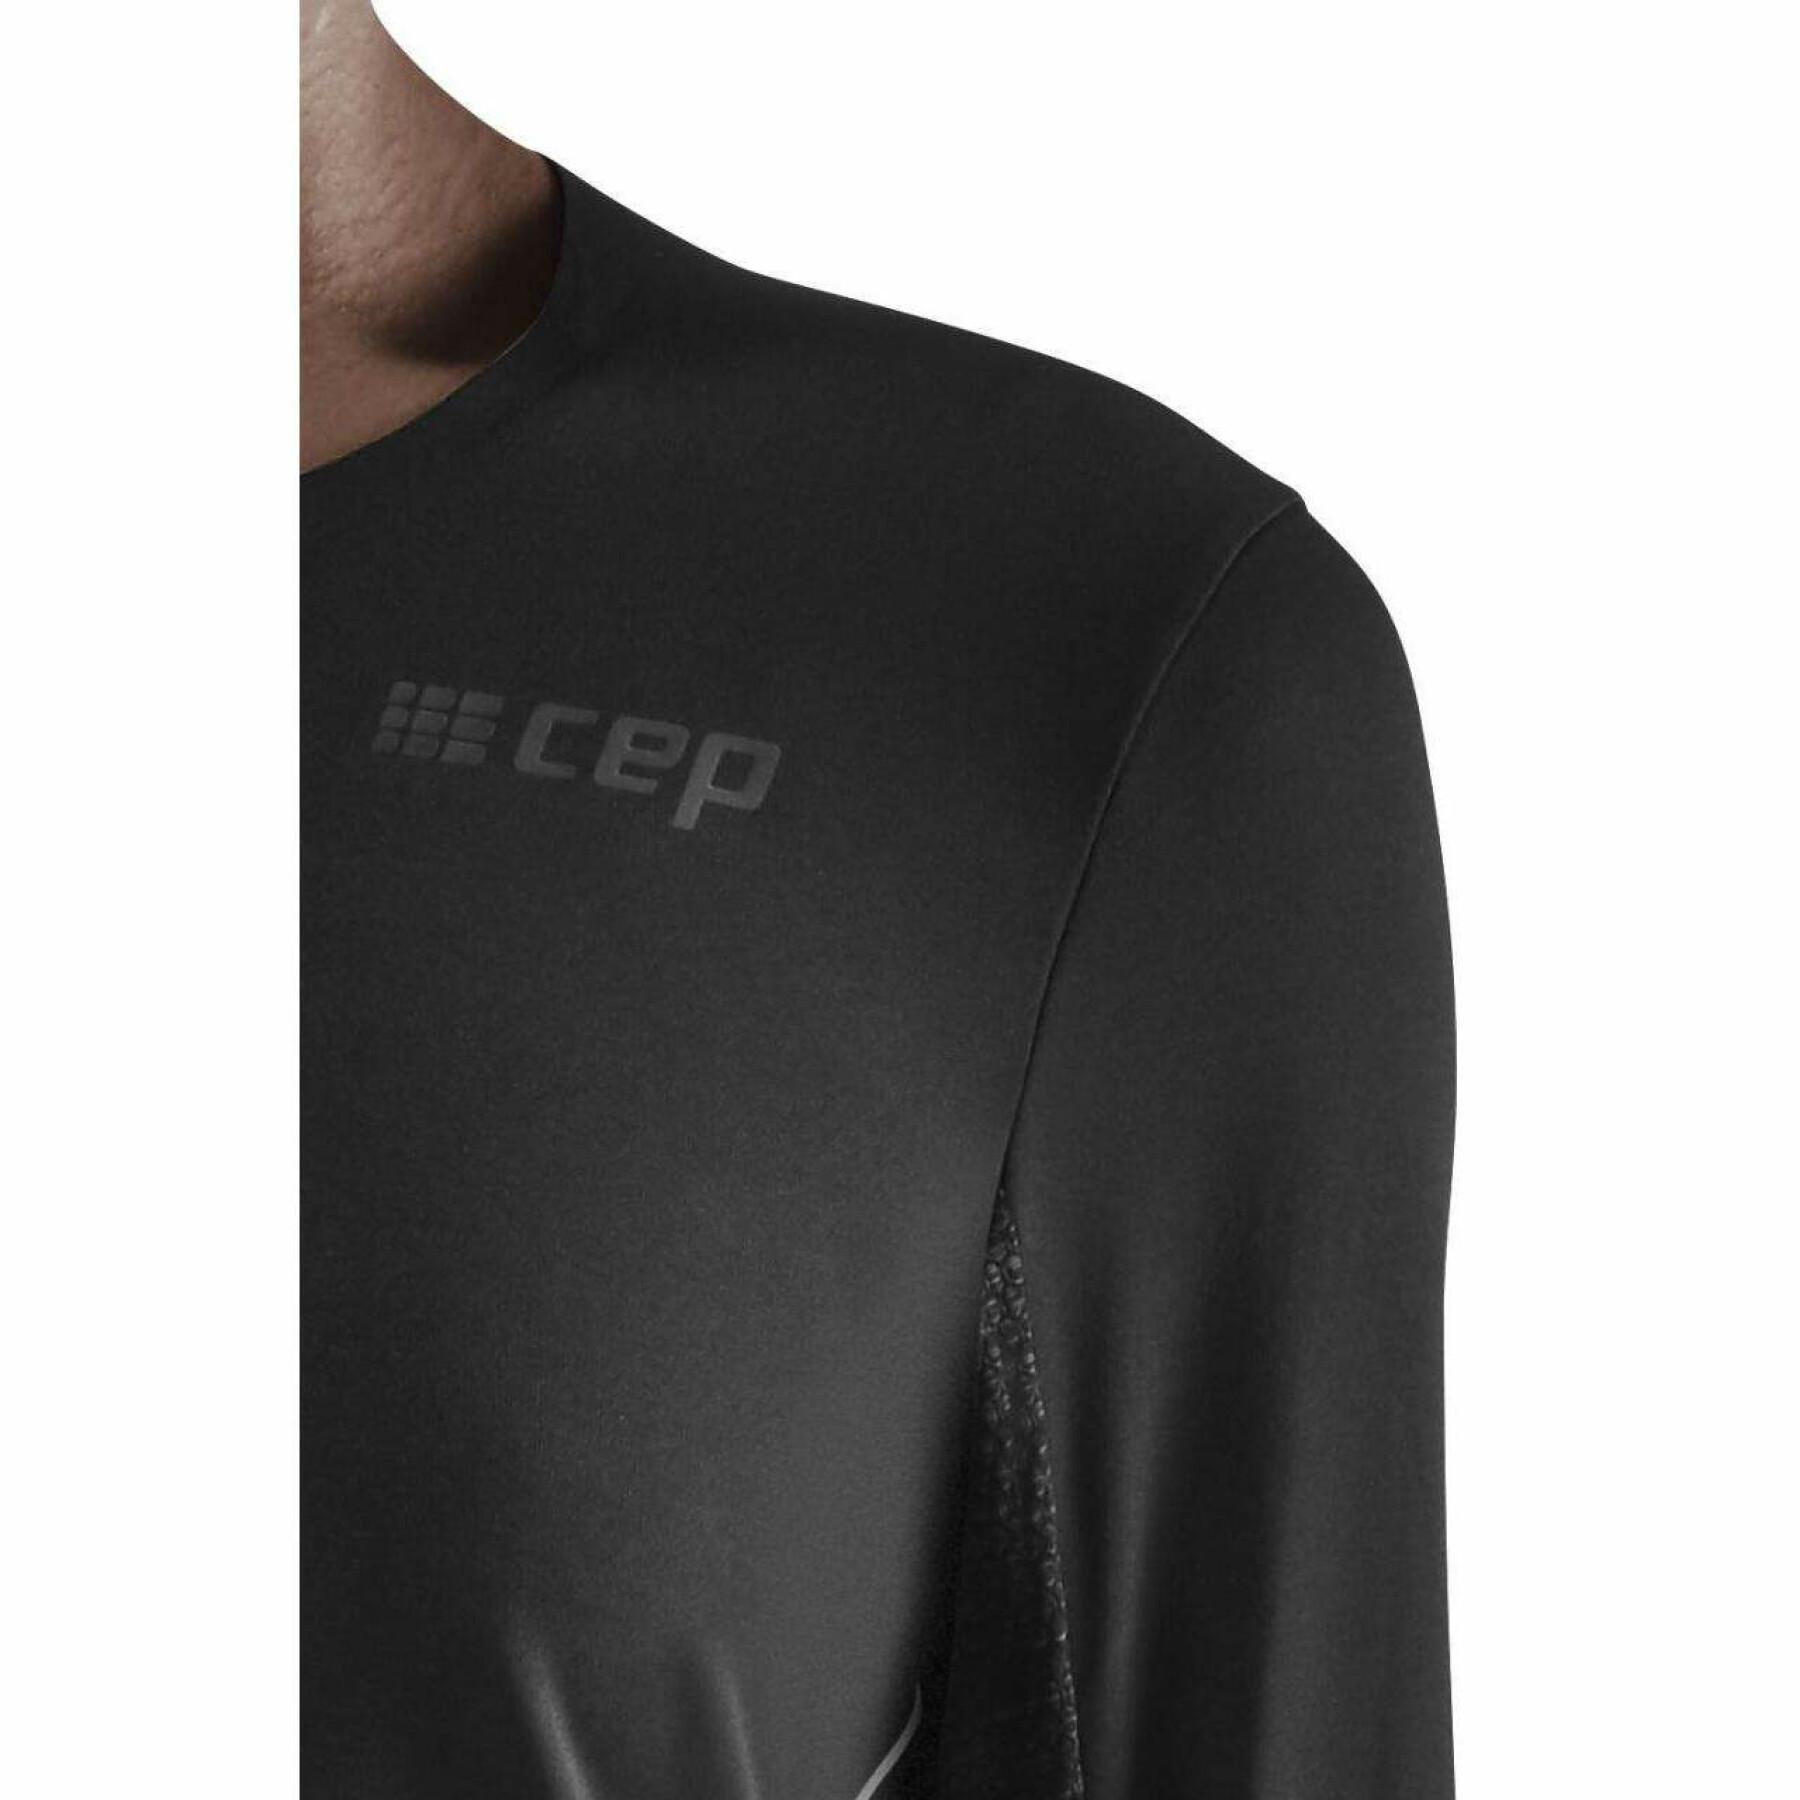 Damska koszulka do biegania z długim rękawem CEP Compression